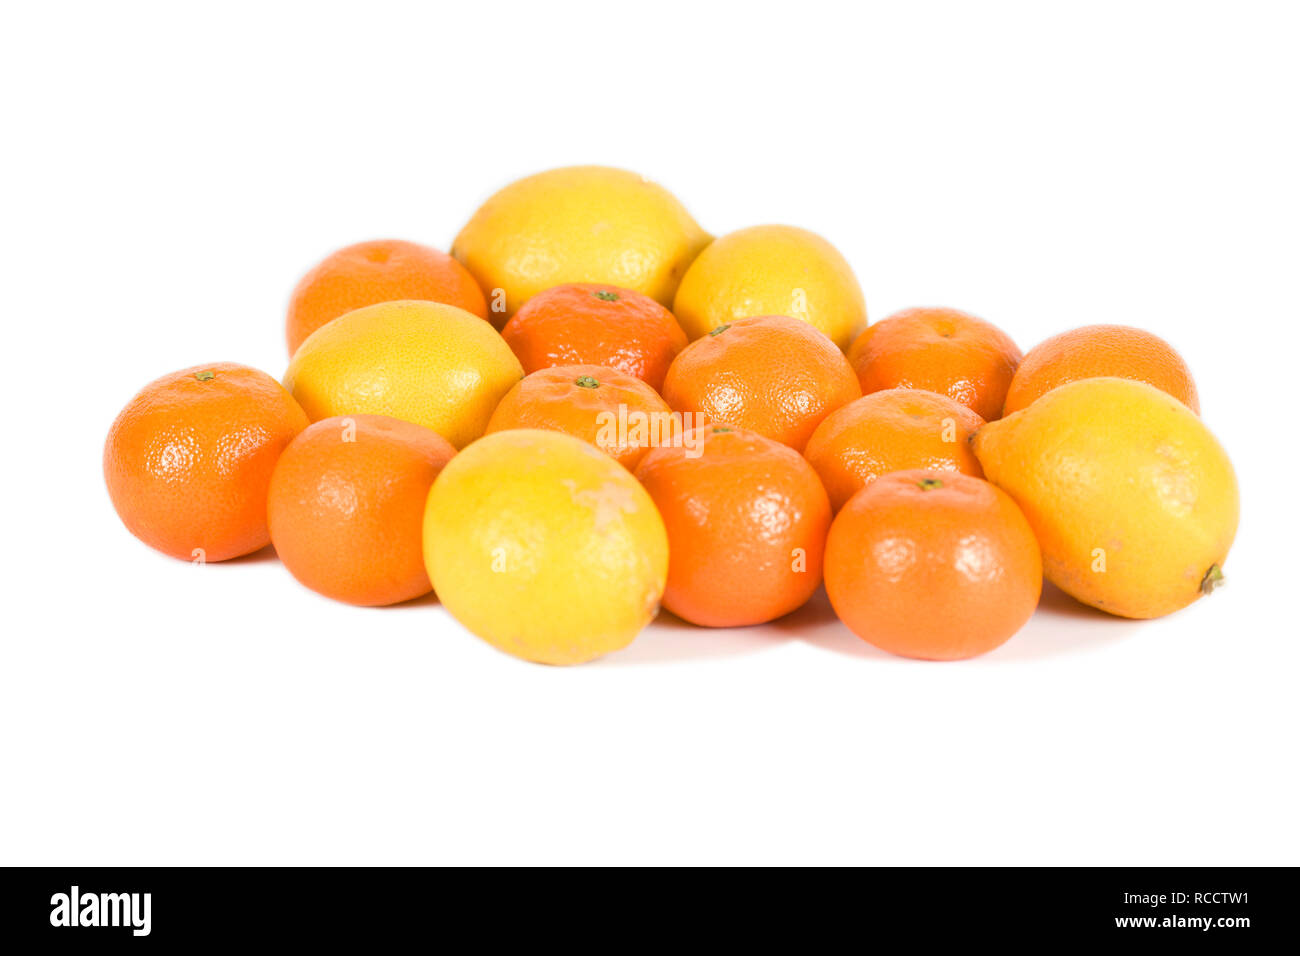 Satsumas and lemons on isolated white background Stock Photo